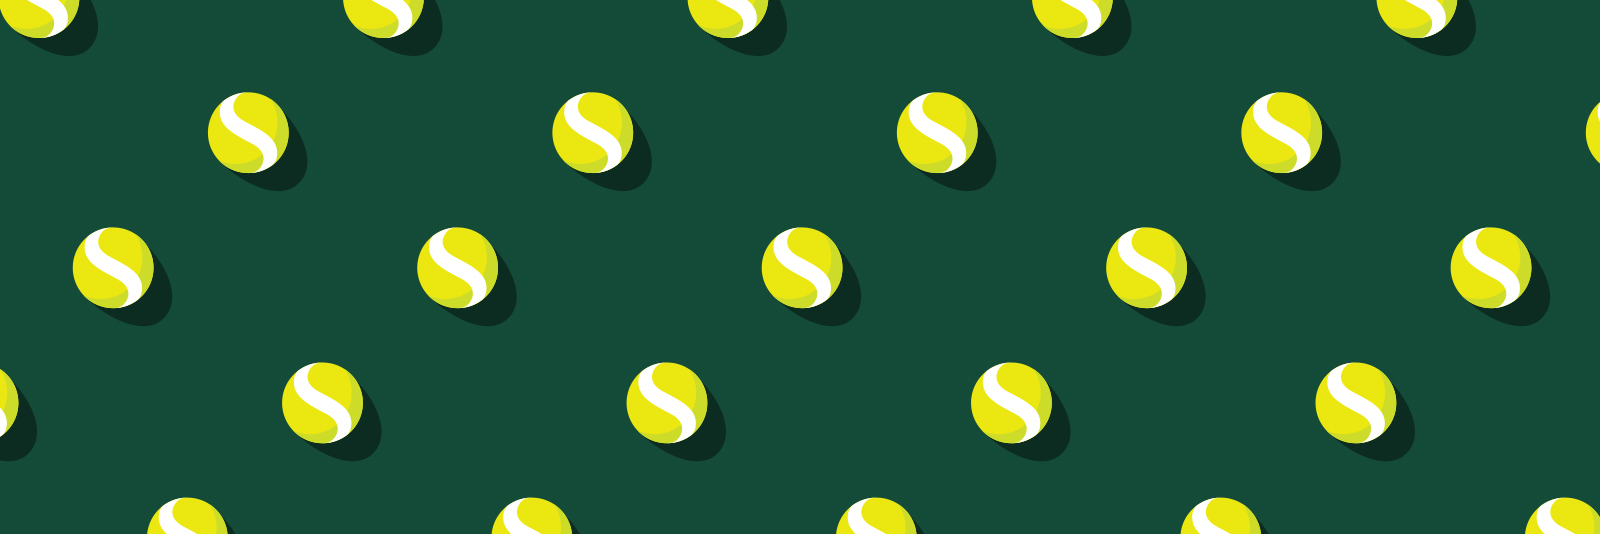 SetMatchup ball pattern